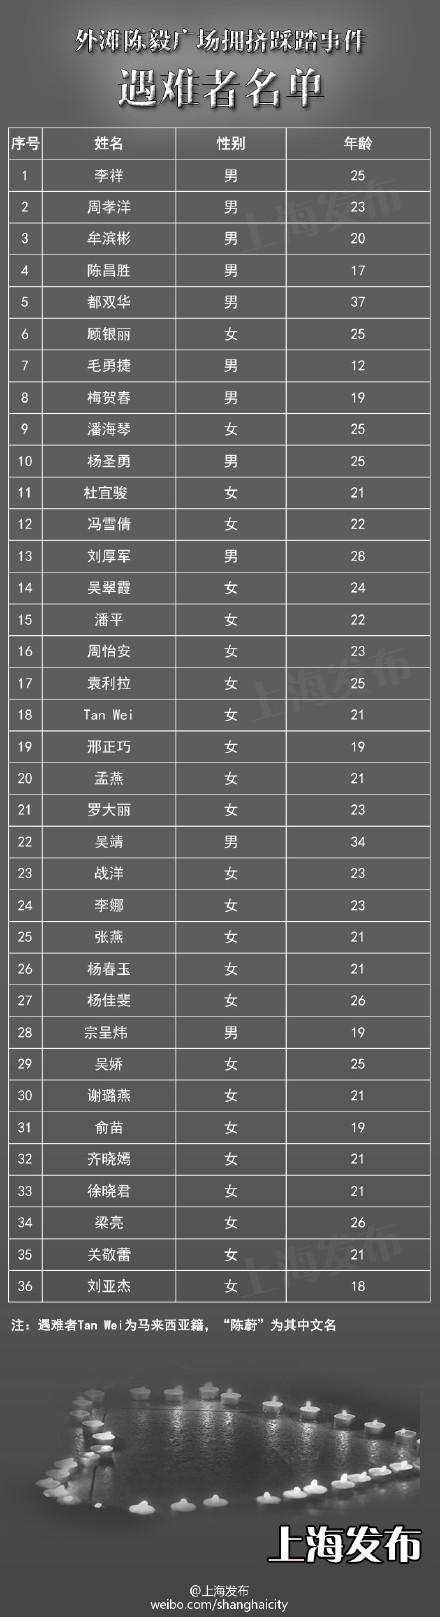 上海外滩踩踏事件36位遇难者名单全部公布(表)